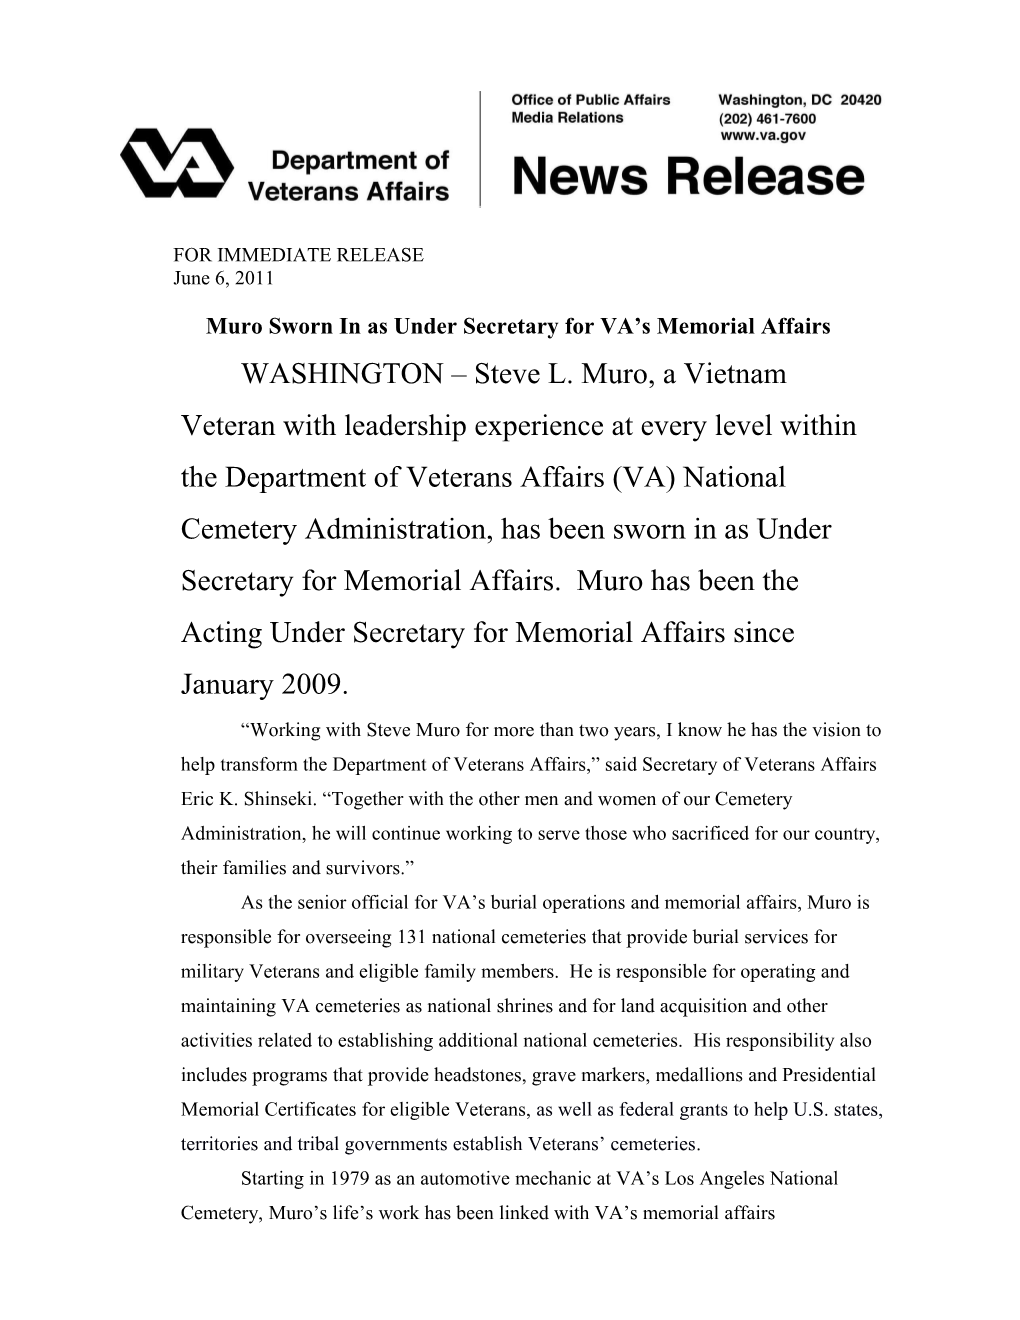 Muro Sworn in As Under Secretary for VA S Memorial Affairs